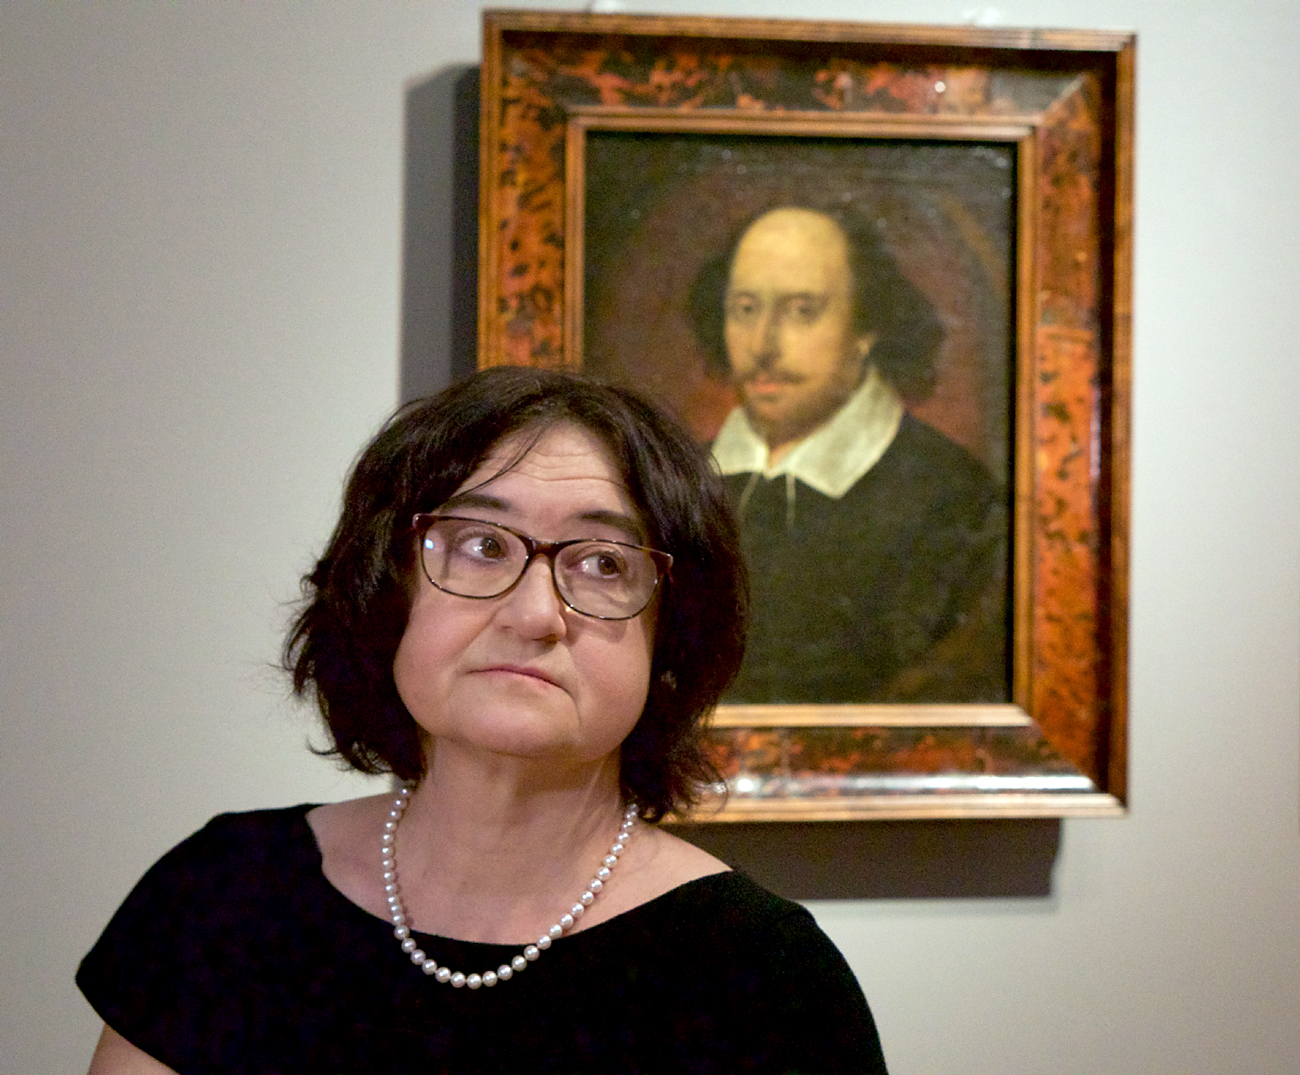 Zelfira Tregúlova, directora de la prestigiosa Galería Tretiakov. 